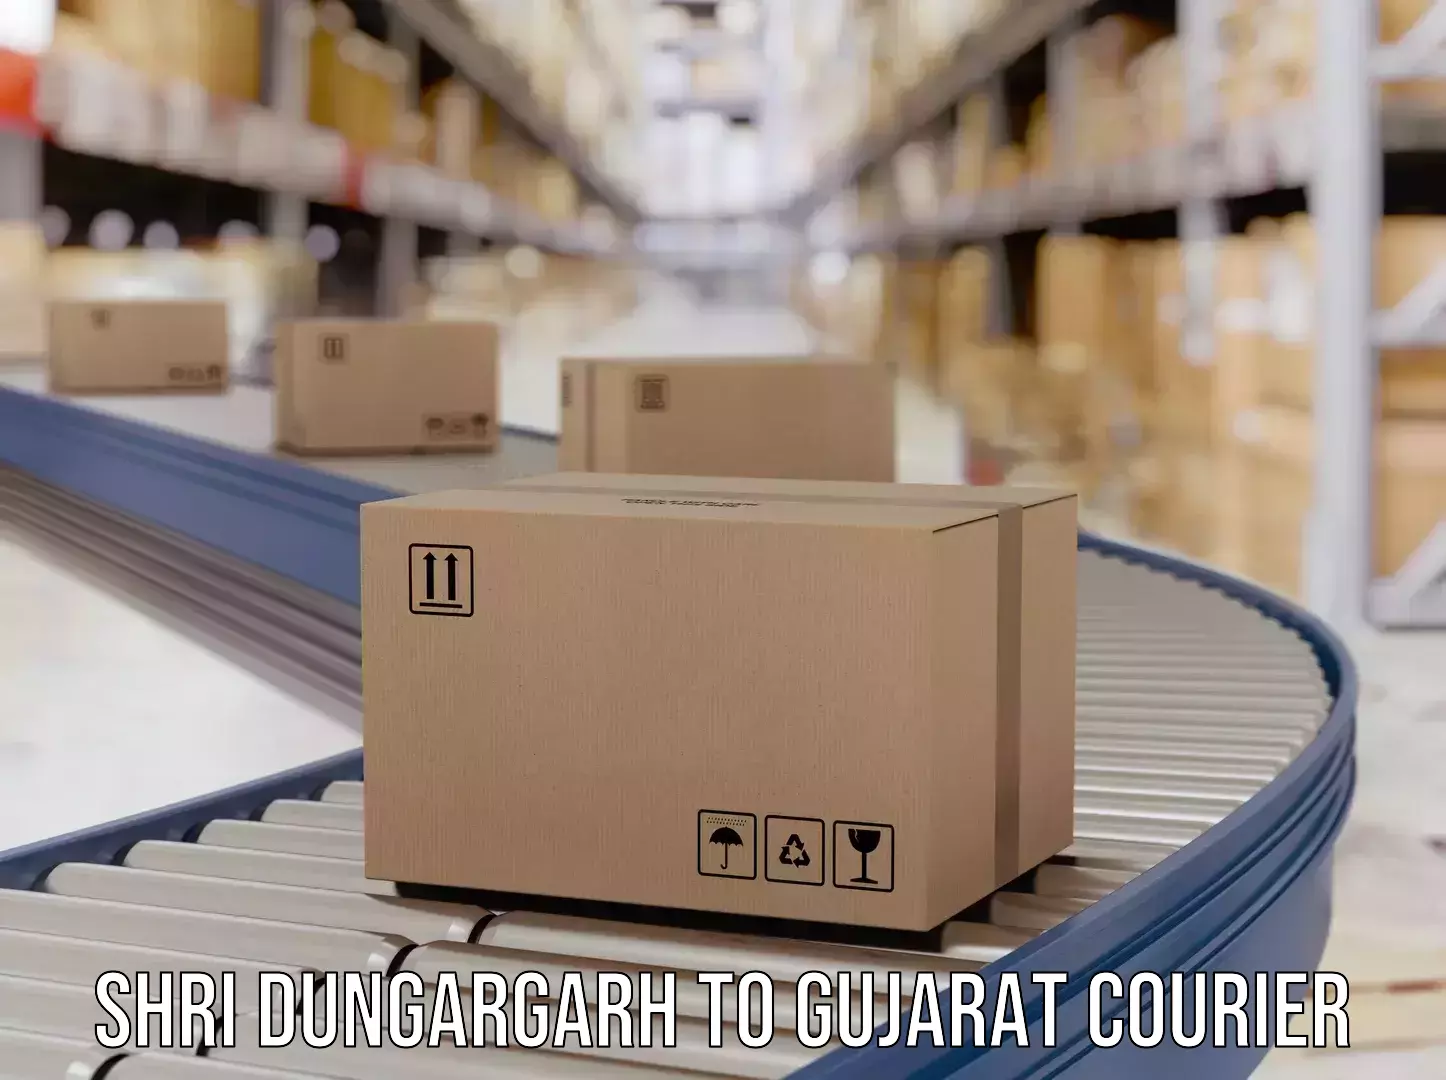 High-priority parcel service Shri Dungargarh to IIIT Vadodara